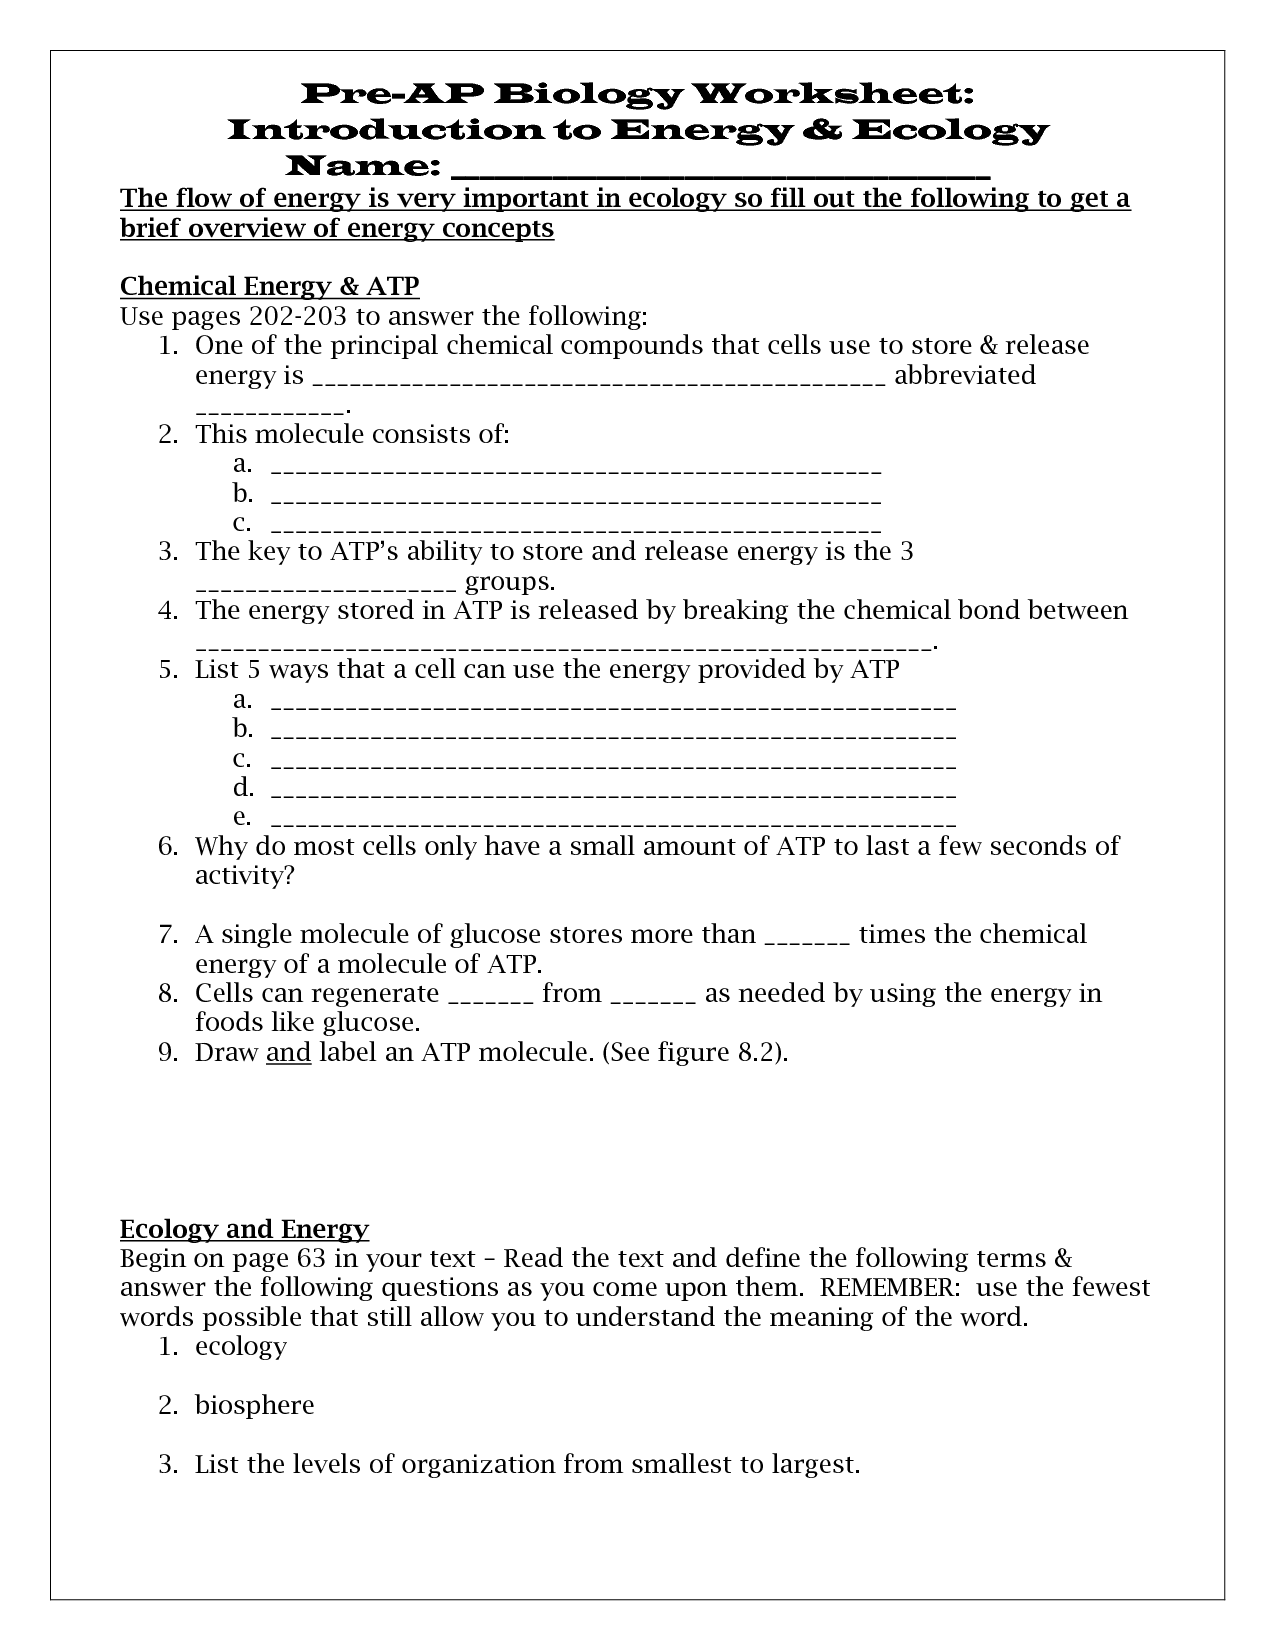 Introduction to Energy Worksheet Answer Key Image